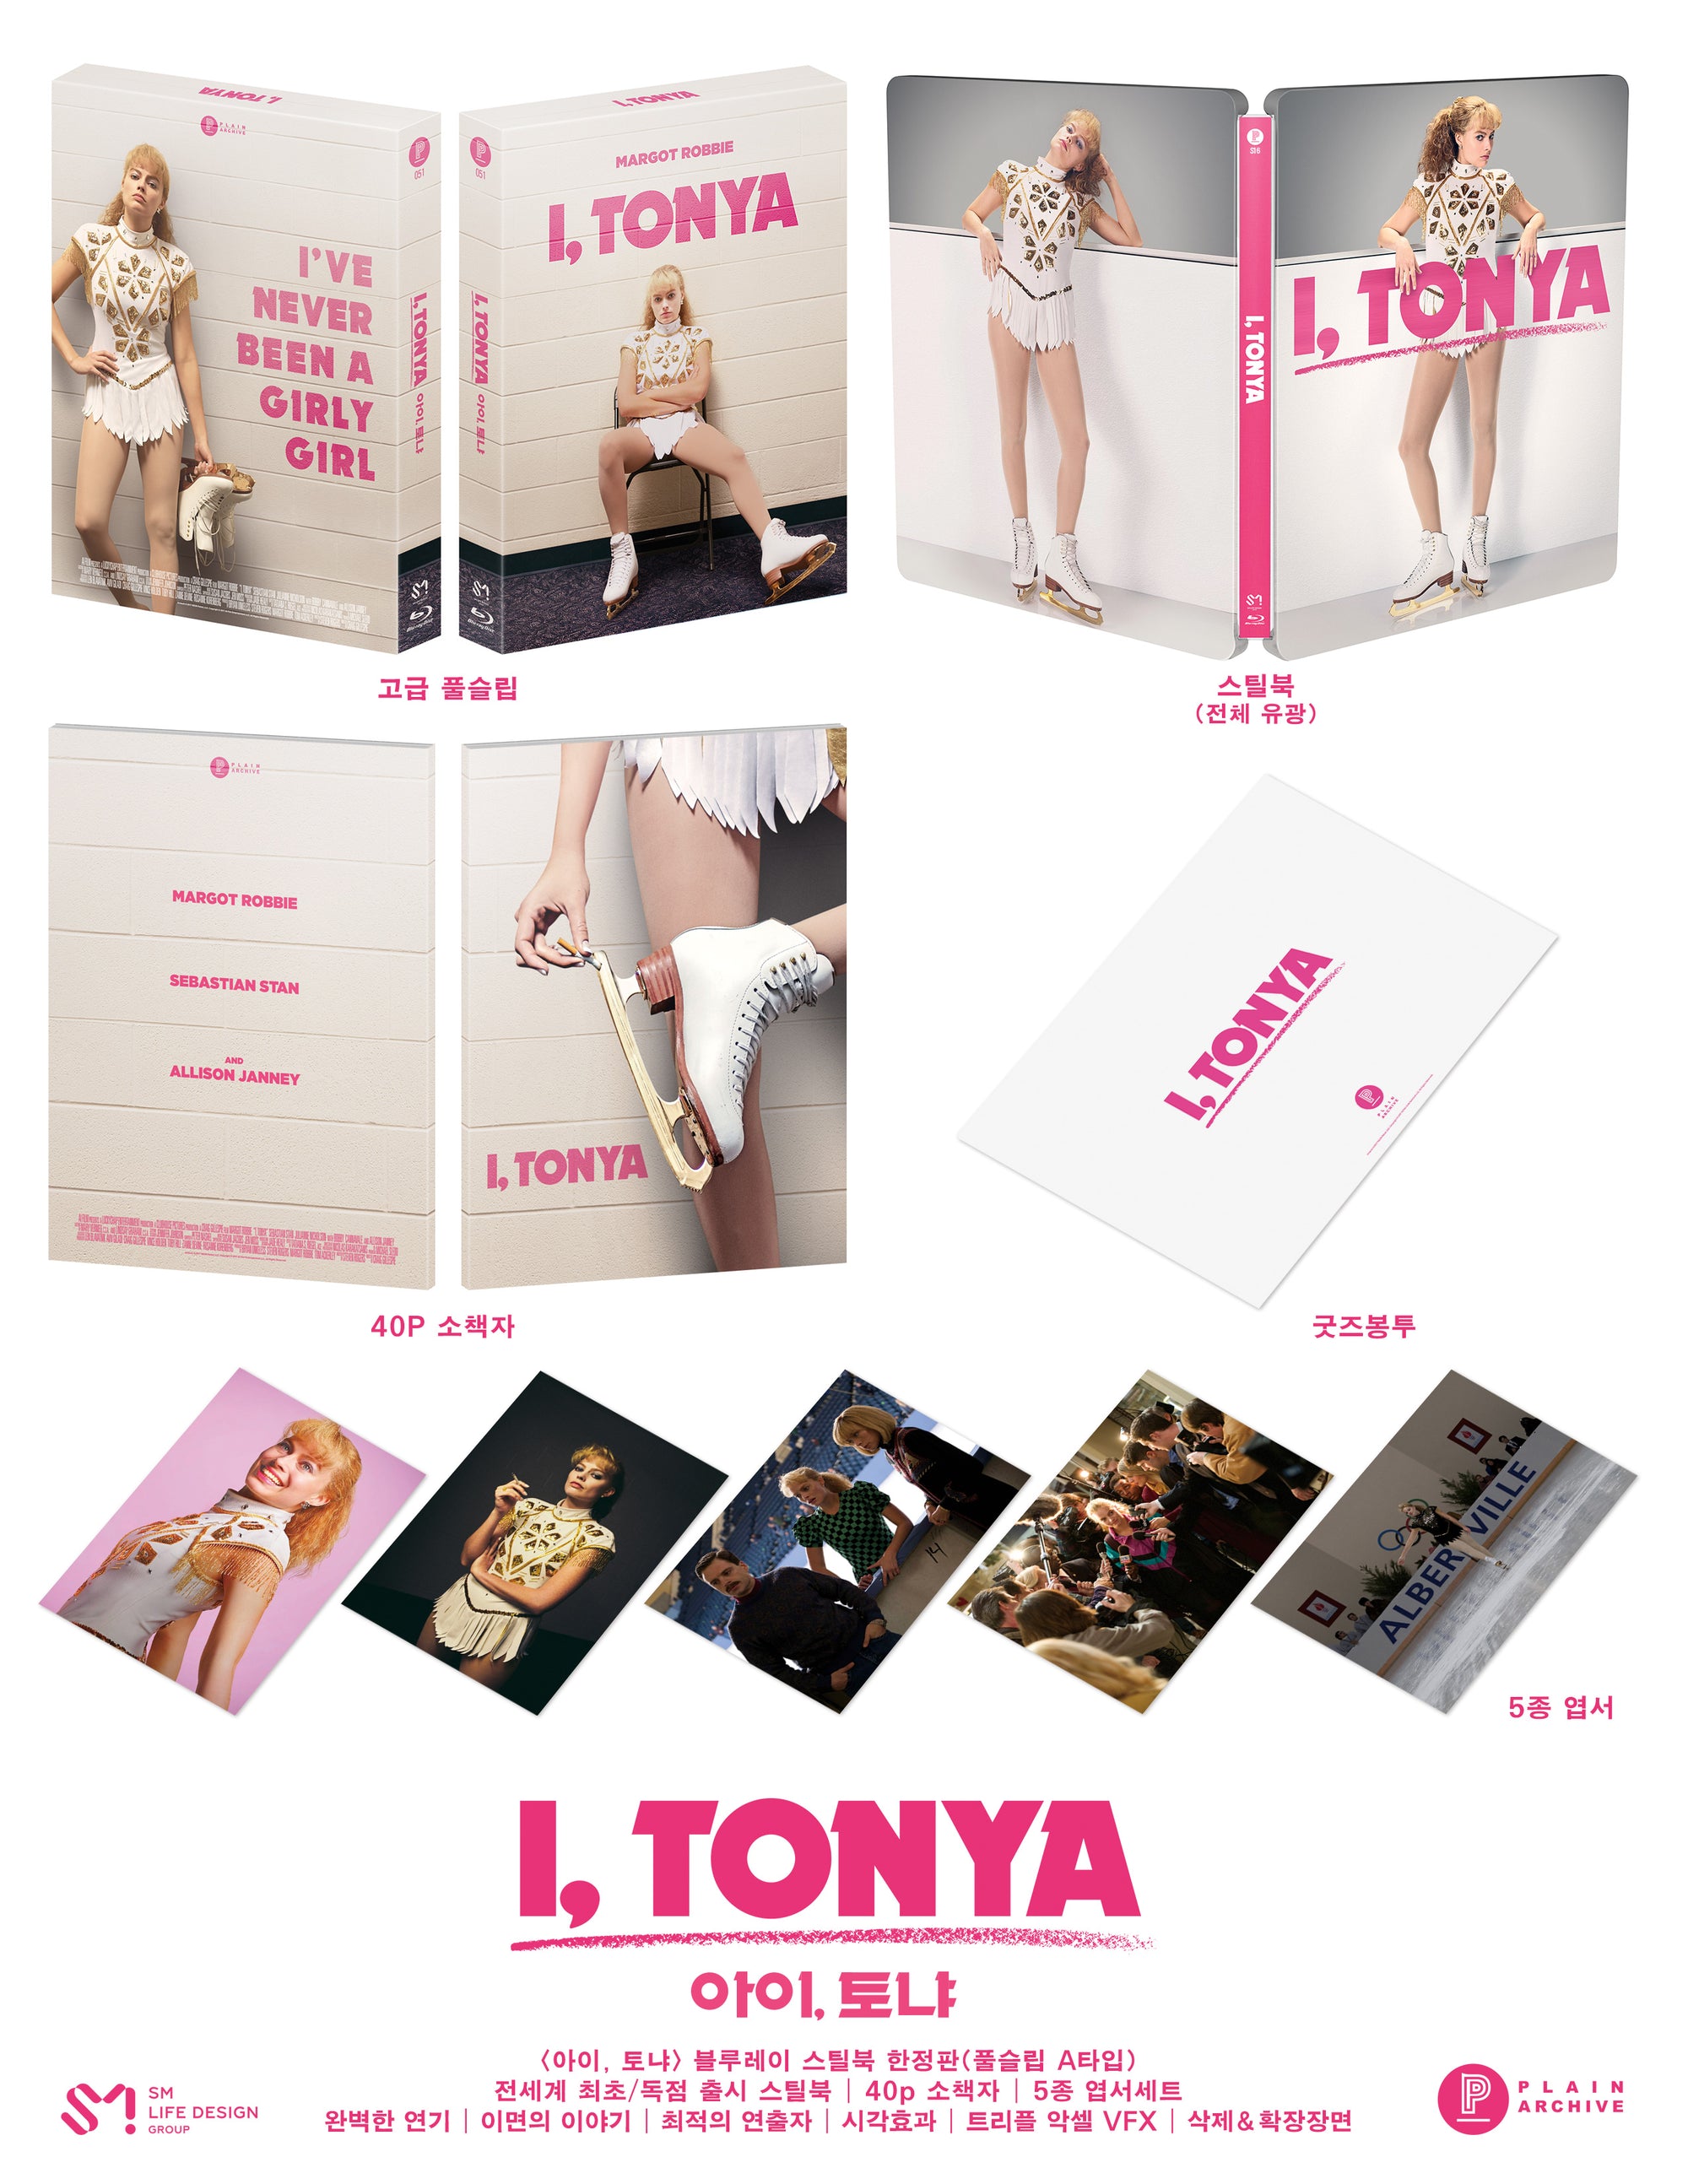 I, TONYA Blu-ray Steelbook: Full Slip (Type A)